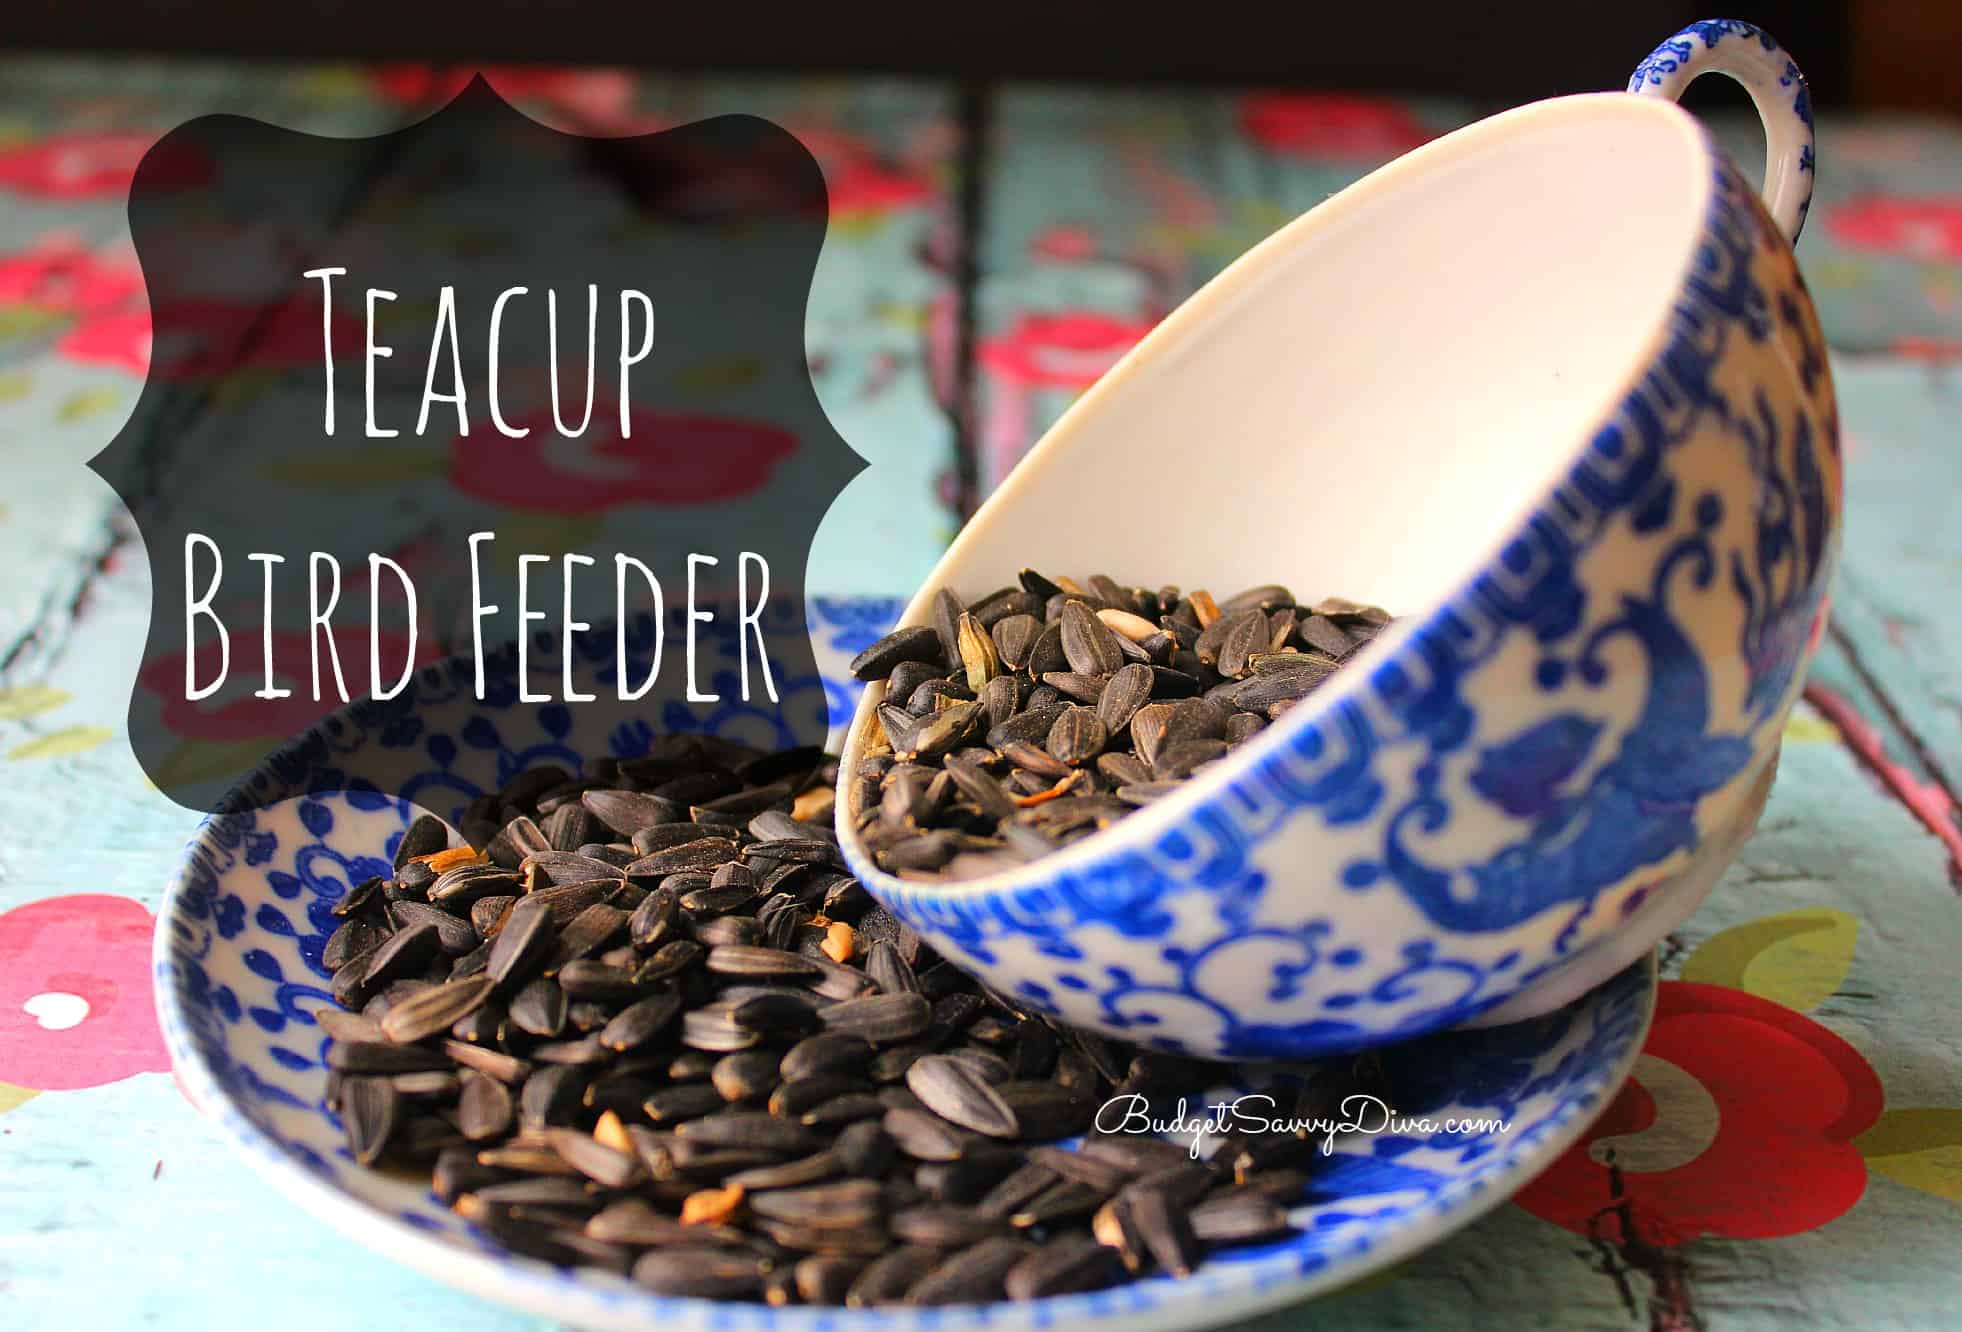 Teacup bird feeder